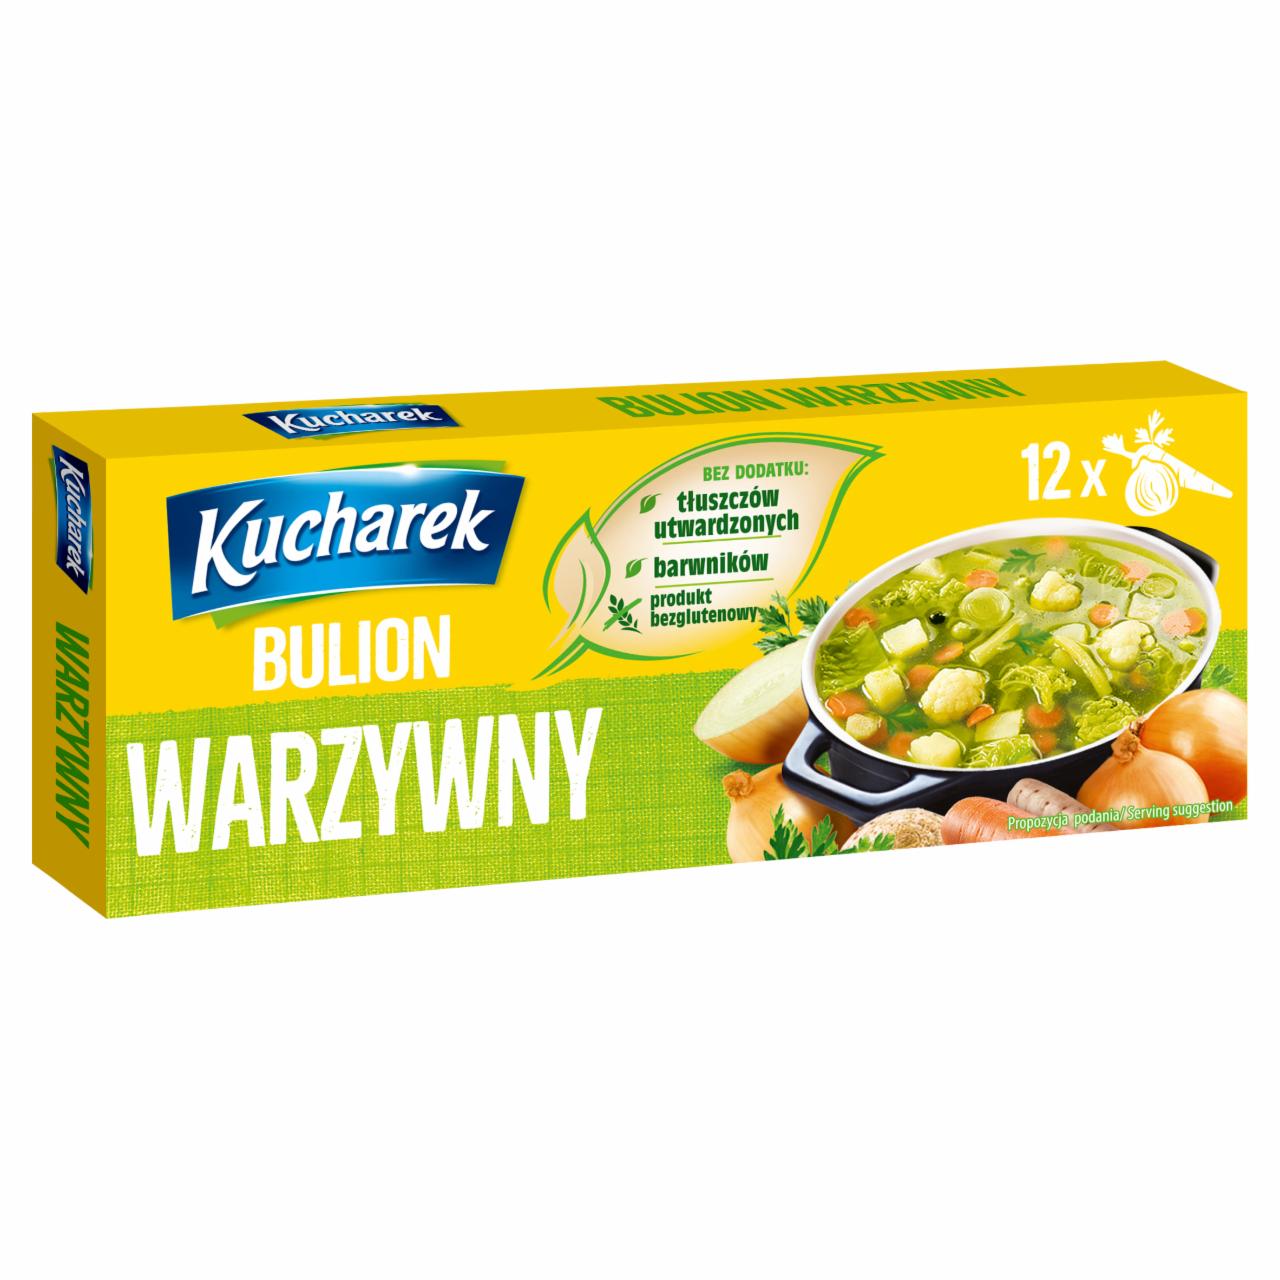 Zdjęcia - Kucharek Bulion warzywny 120 g (12 x 10 g)